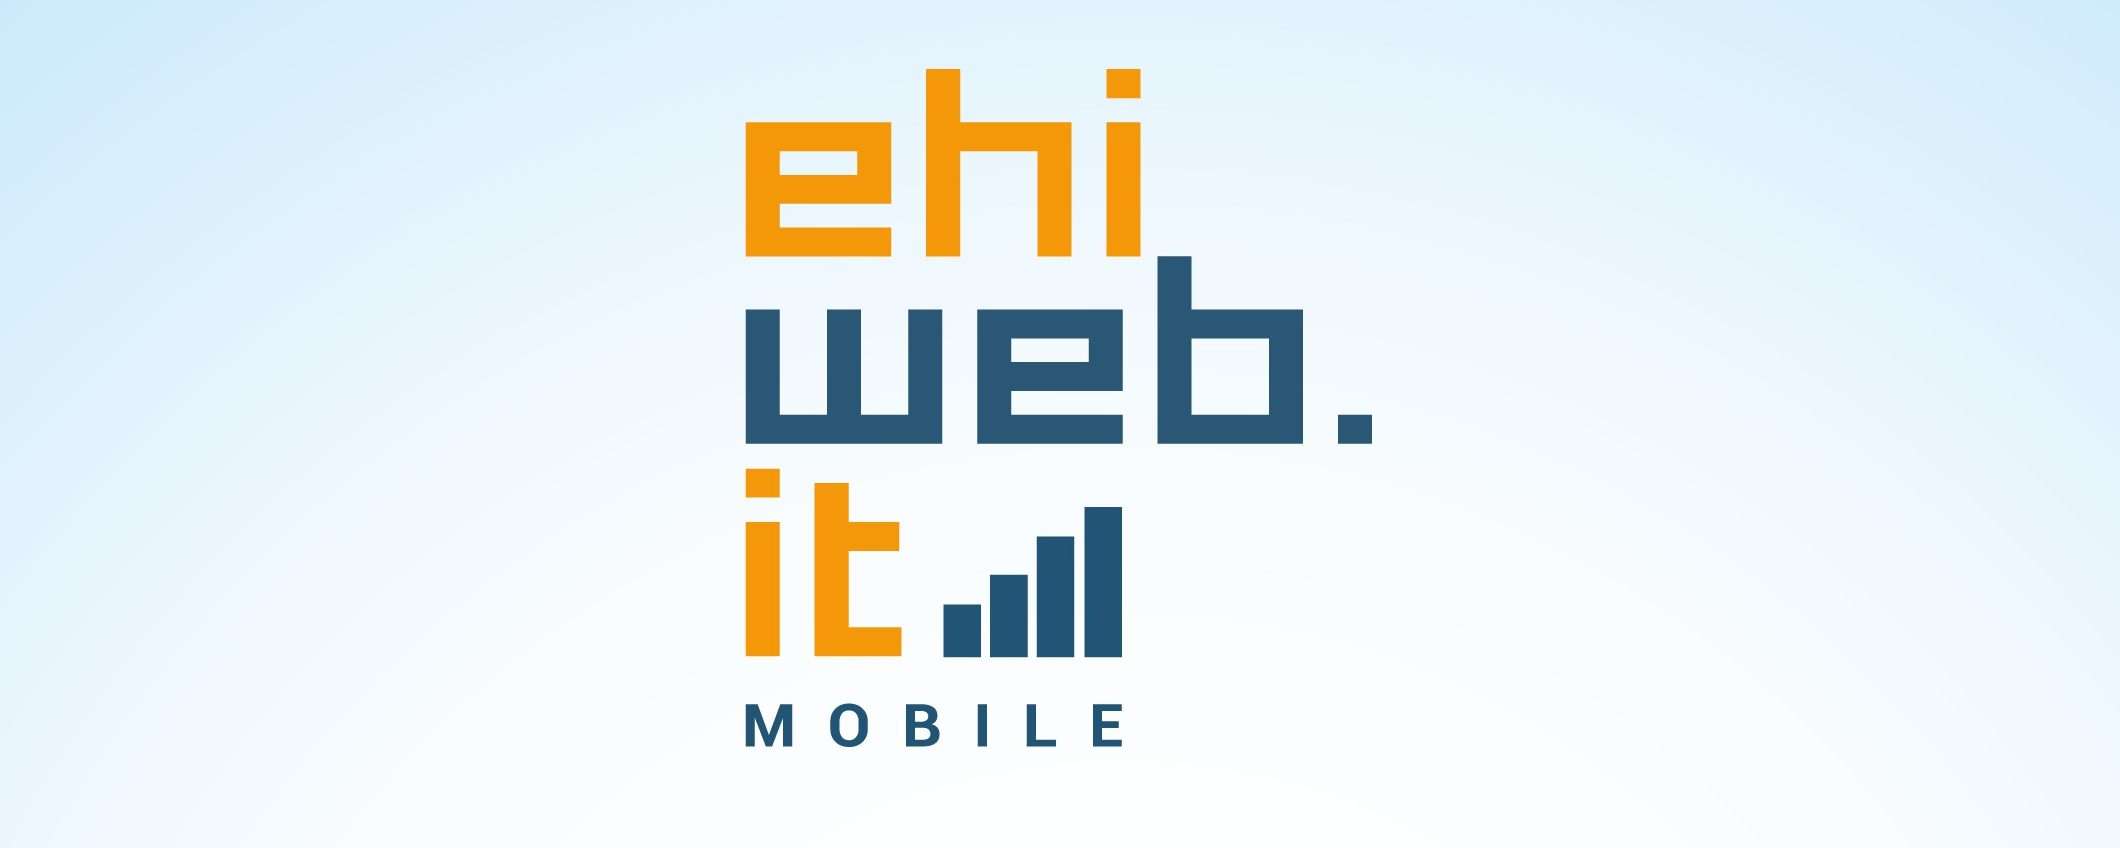 Ehiweb ora è anche mobile: l'annuncio ufficiale